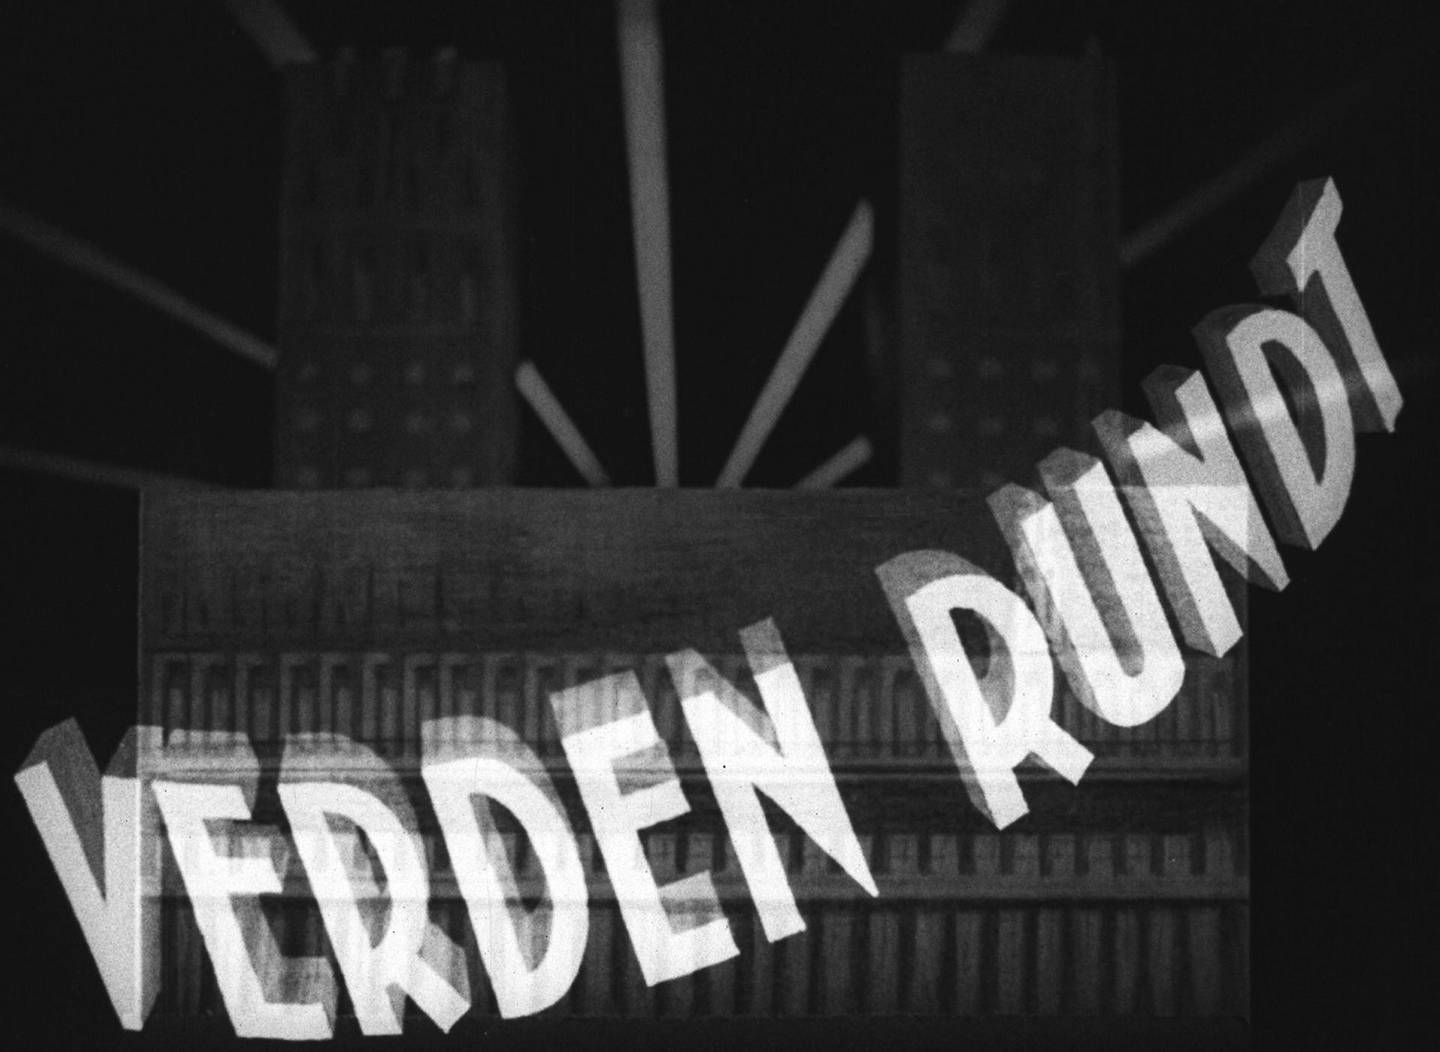 Verden Rundt var Norges første lydfilmavis og ble spilt på Paladsteatret i årene 1930-1941. Først ukentlig, men etter hvert hver dag.
Foto: Verden Rundt, Oslo byarkiv